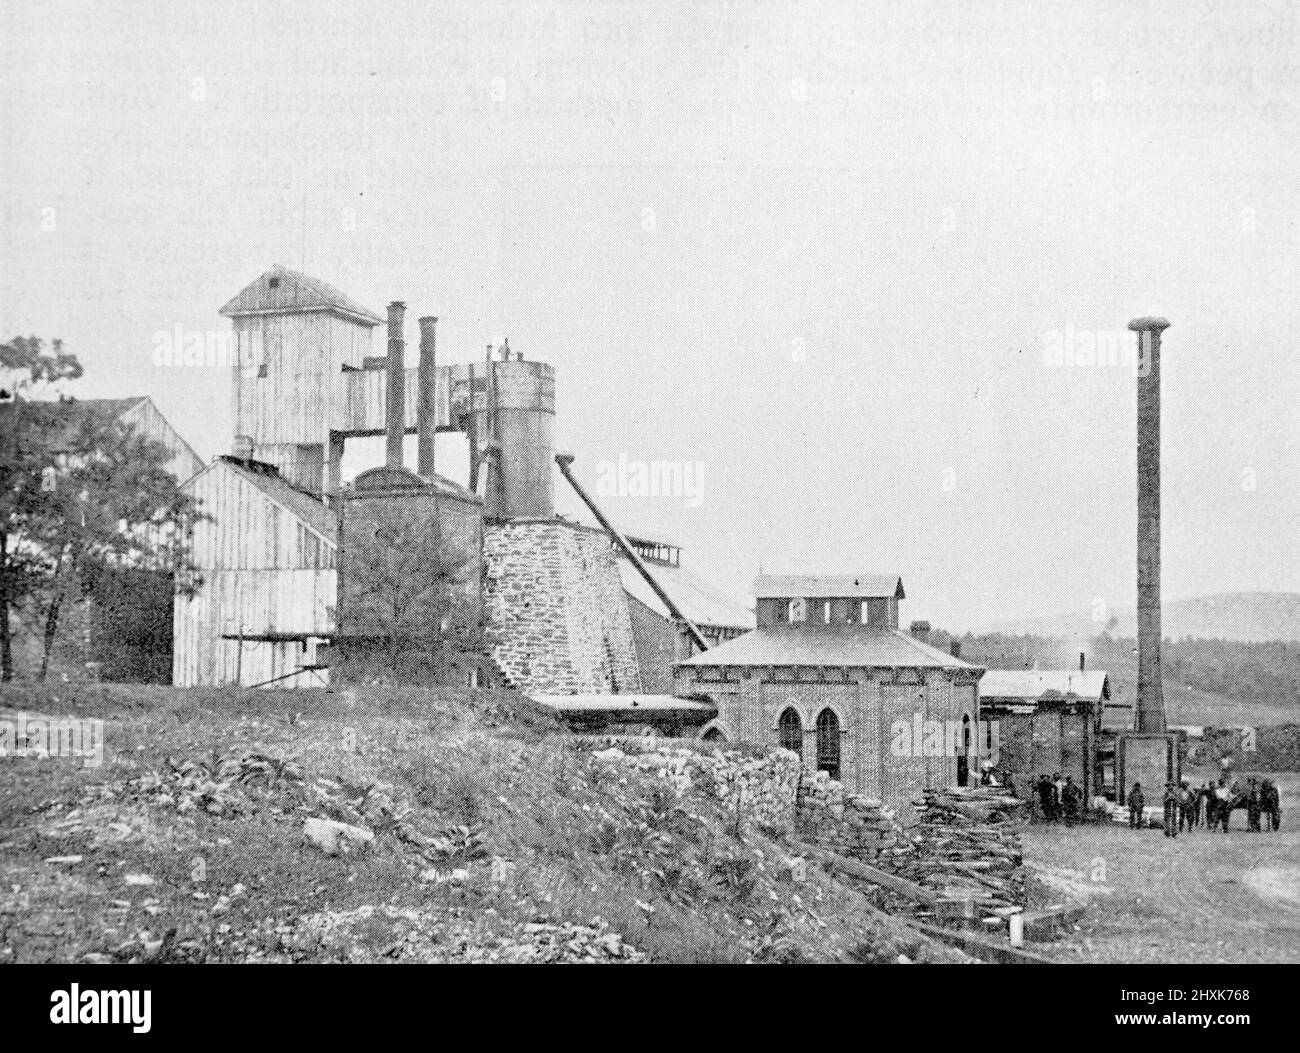 Pine Grove, Pennsylvania, horno de carbón construido en 1773 y remodelado en 1878. Fotografía en blanco y negro tomada alrededor de 1890s Foto de stock